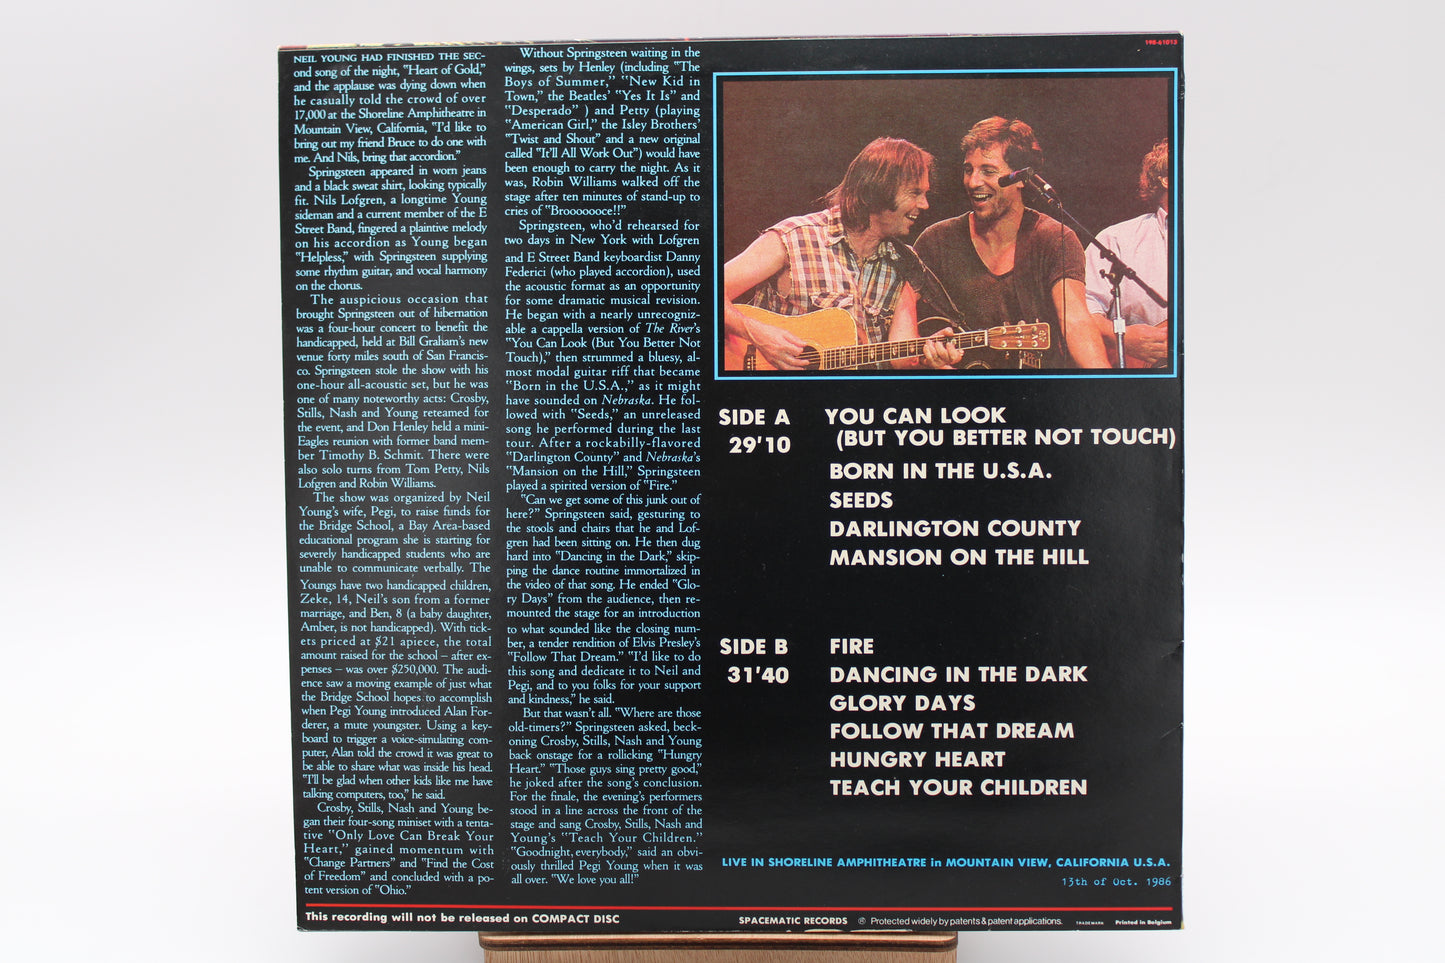 Bruce Springsteen - You Better Not Touch - Unofficial Bootleg Vinyl LP - Live 1986 Concert